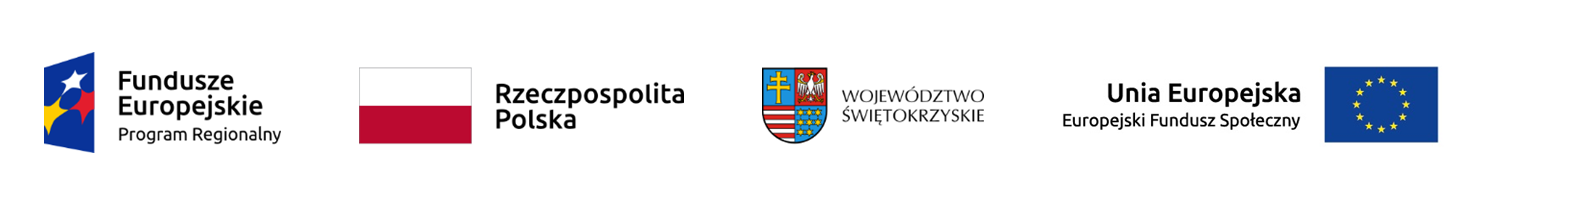 Logotypy: Fundusze Europejskie Program Regionalny, Flaga Rzeczypospolitej Polskiej, Urząd Marszałkowski województwa świętokrzyskiego, Unia Europejska Europejski Fundusz Społeczny